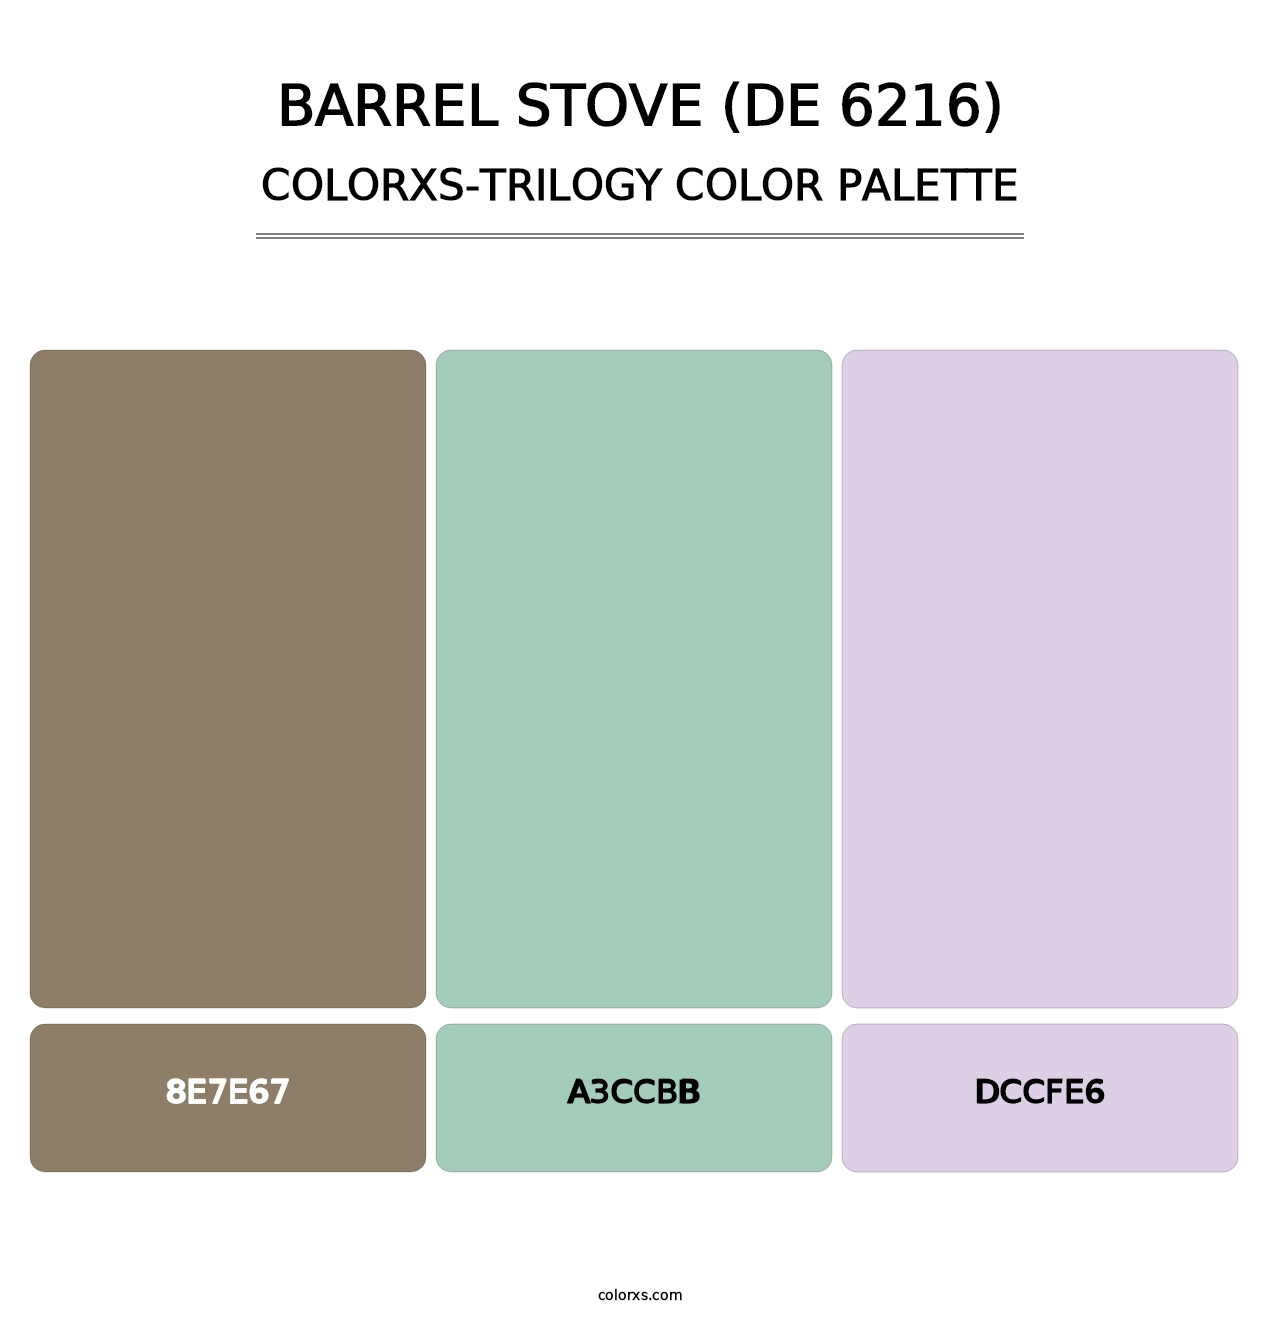 Barrel Stove (DE 6216) - Colorxs Trilogy Palette